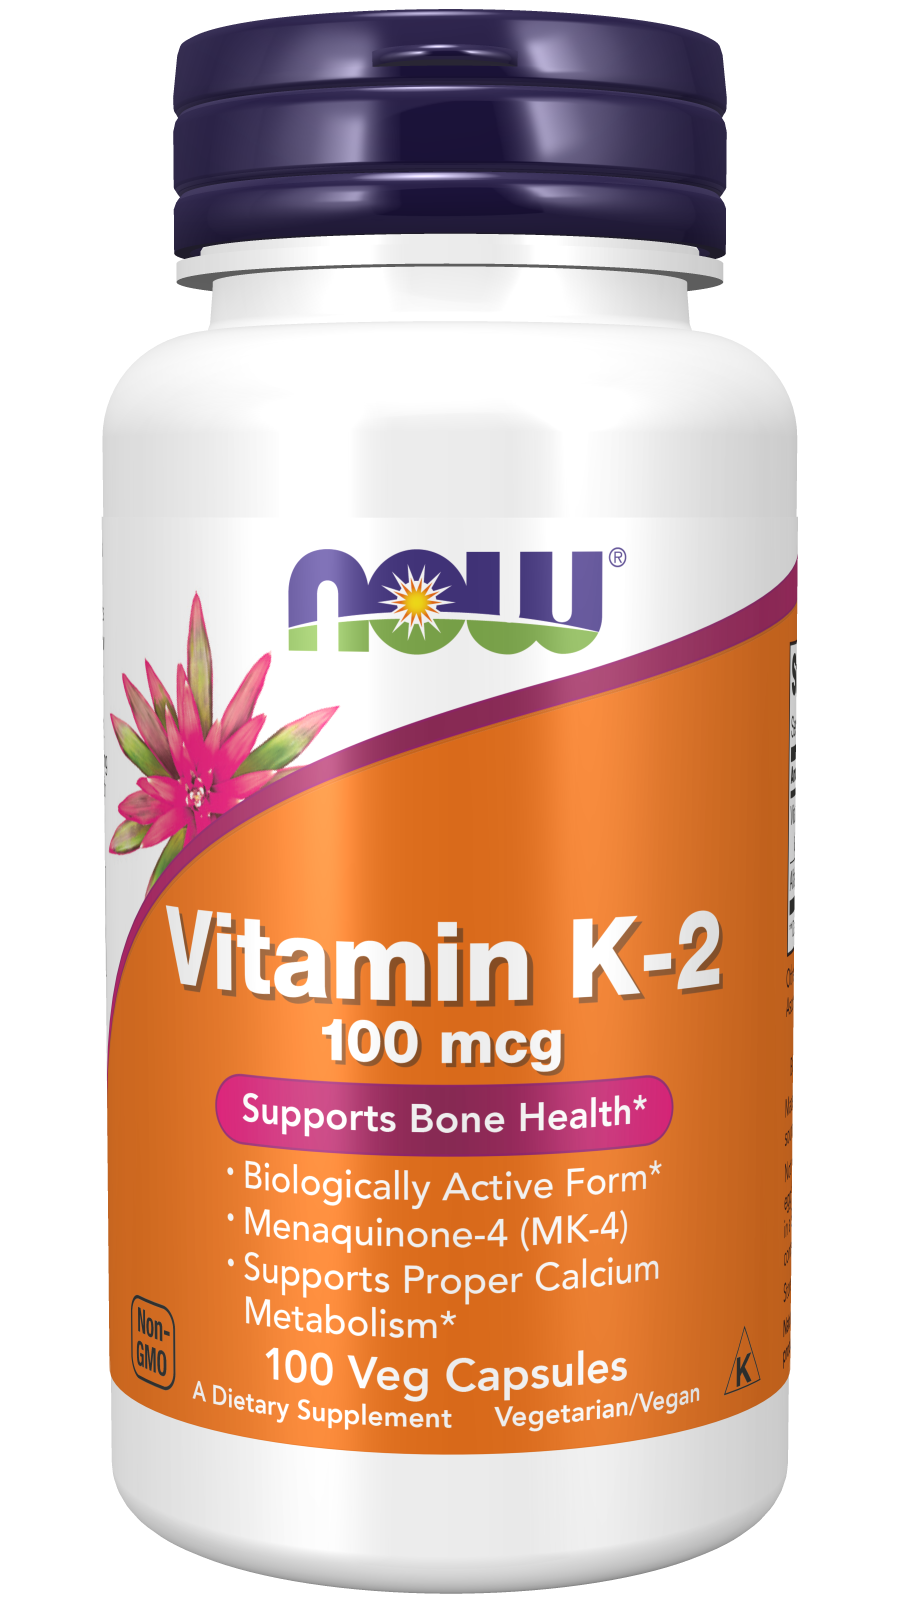 Vitamin K-2 100 mcg - 100 Veg Capsules Bottle Front